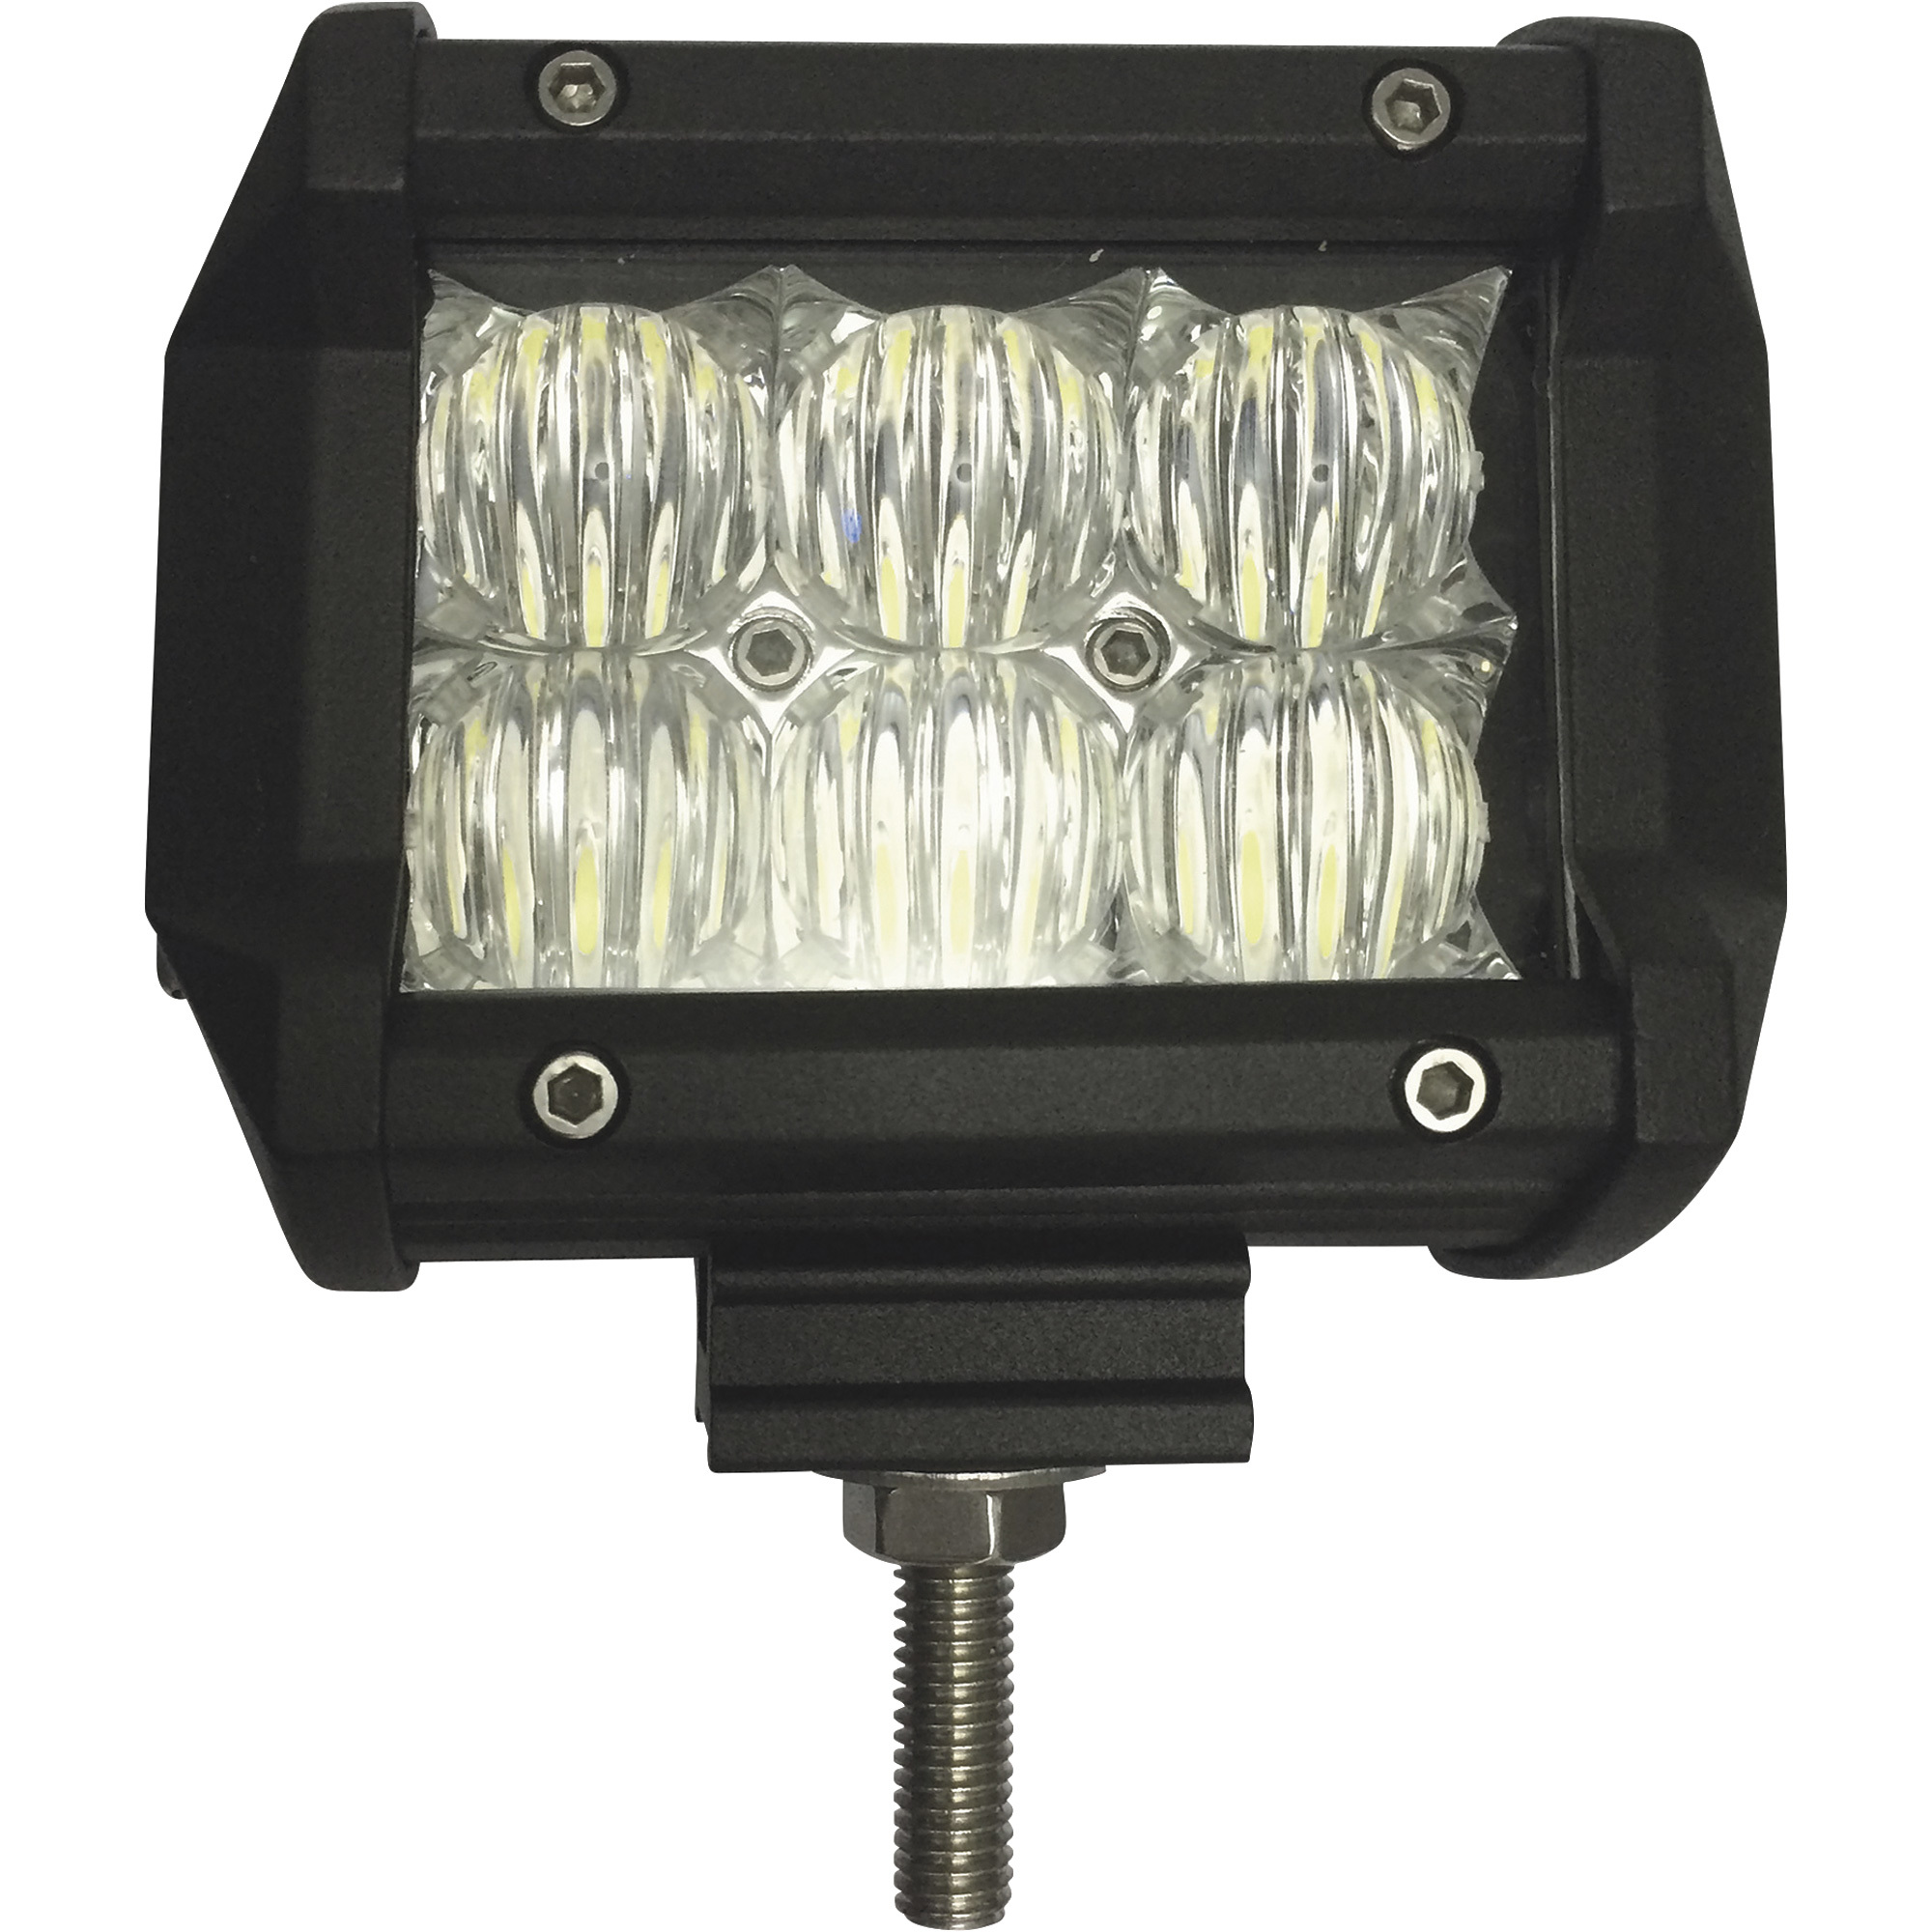 Blazer 12/24 Volt LED Double Row Fog Light Bar â 4Inch, 1600 Lumens, 6 LEDs, Model CWL514